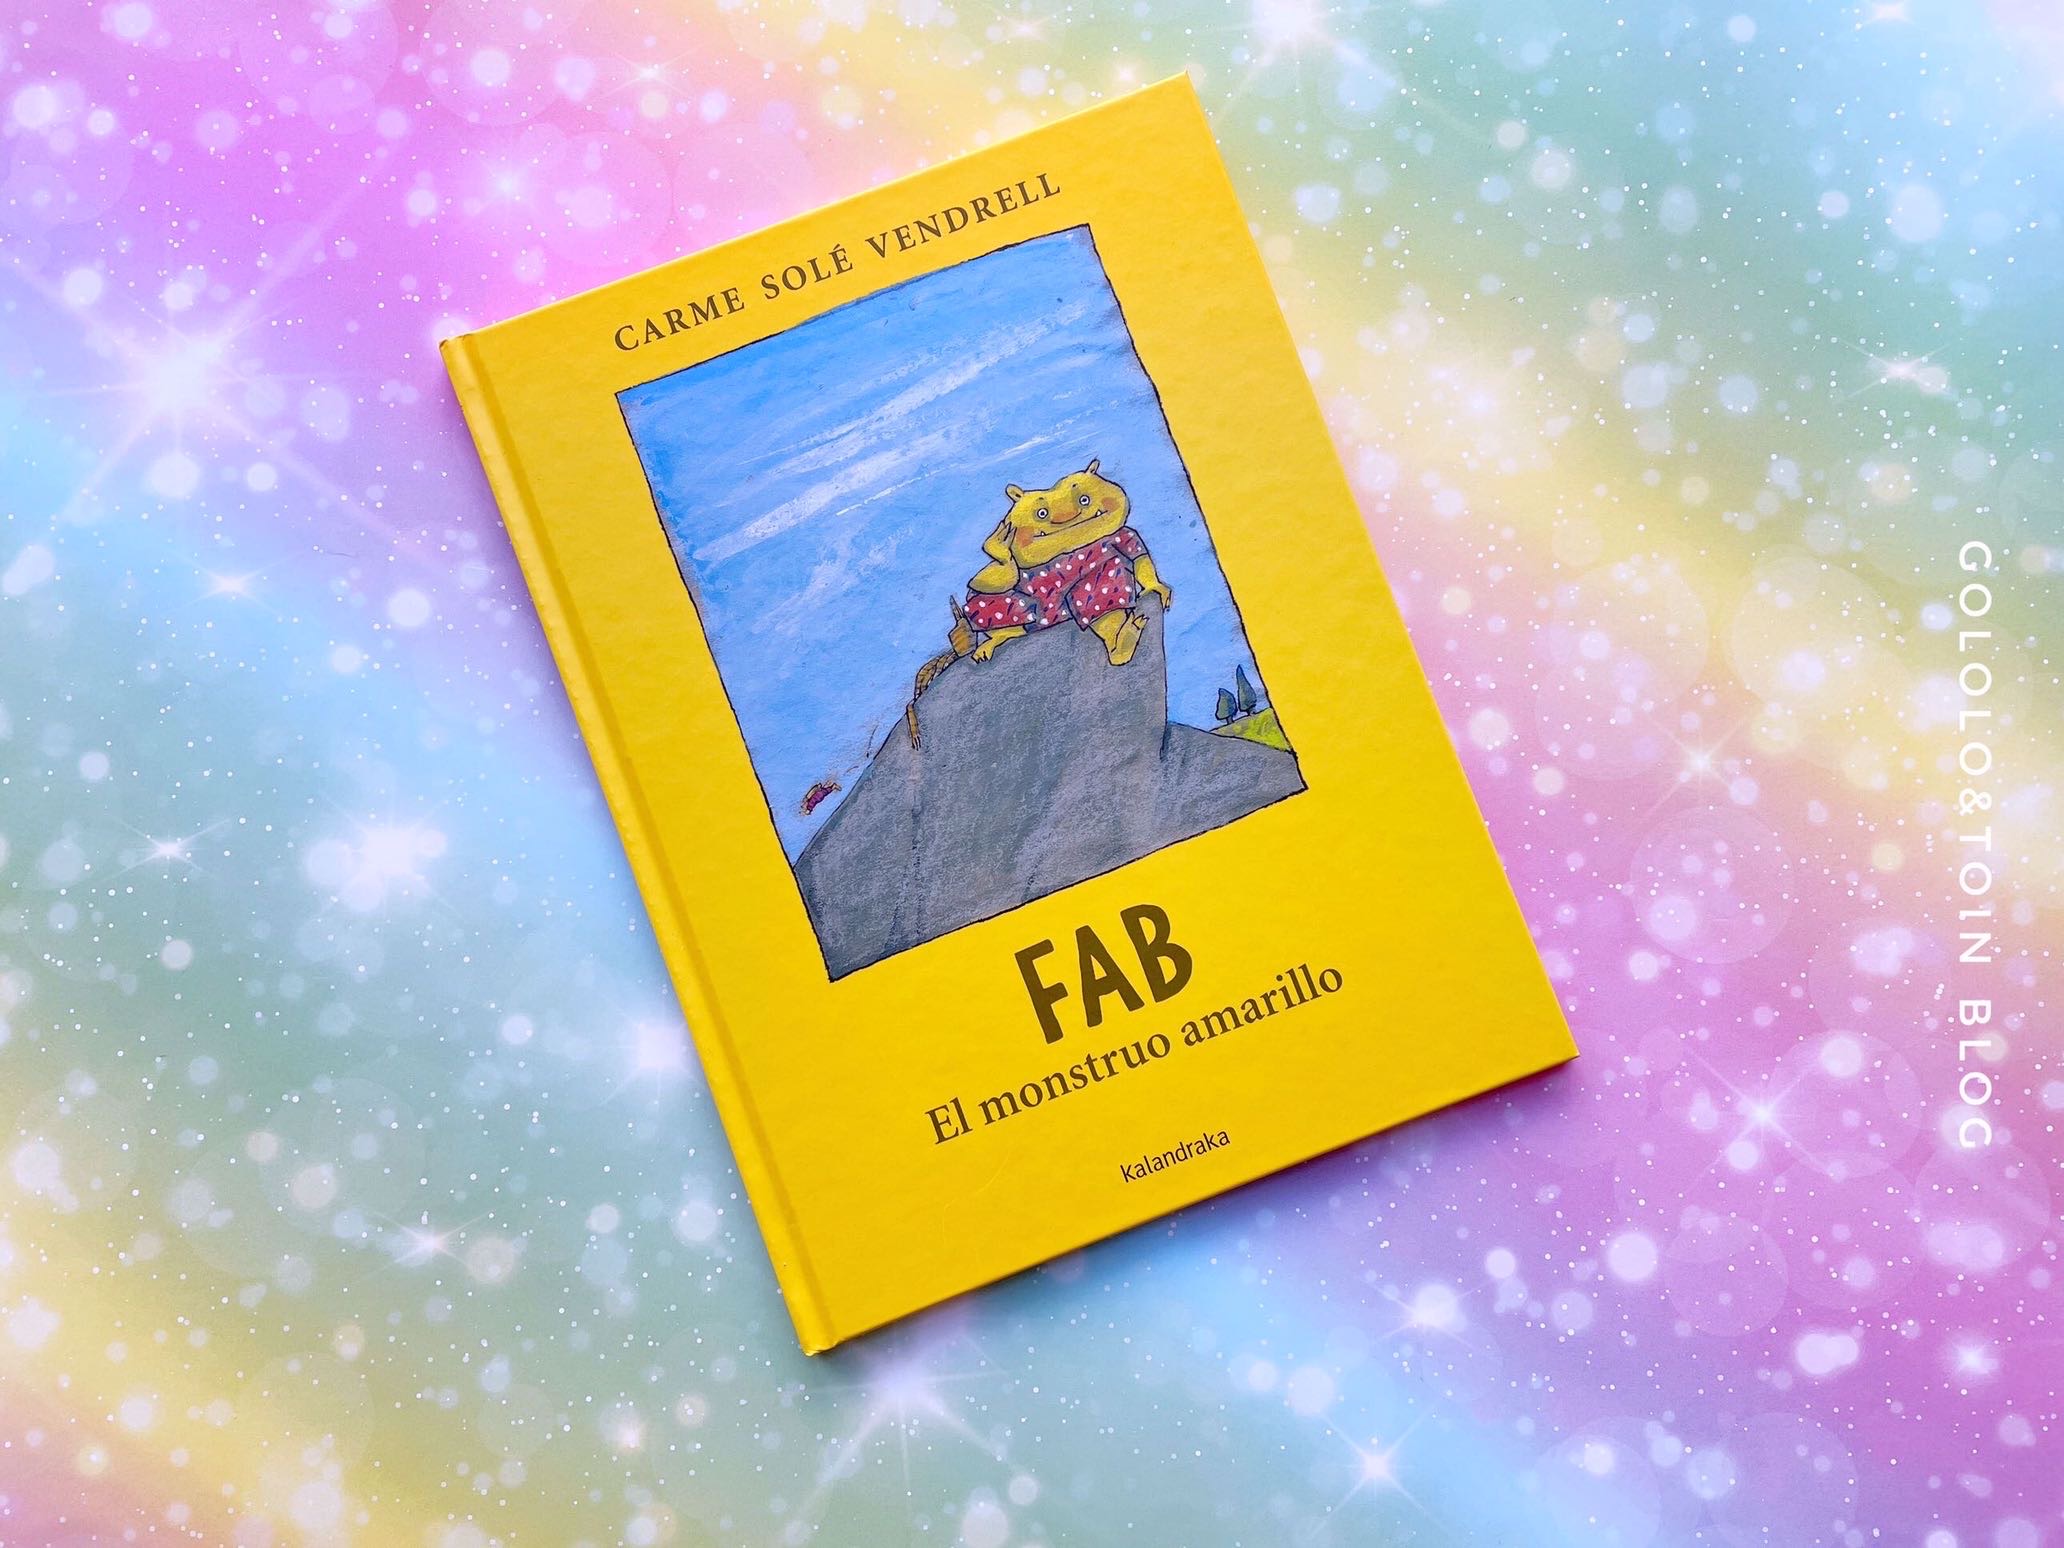 Fab, el monstruo amarillo